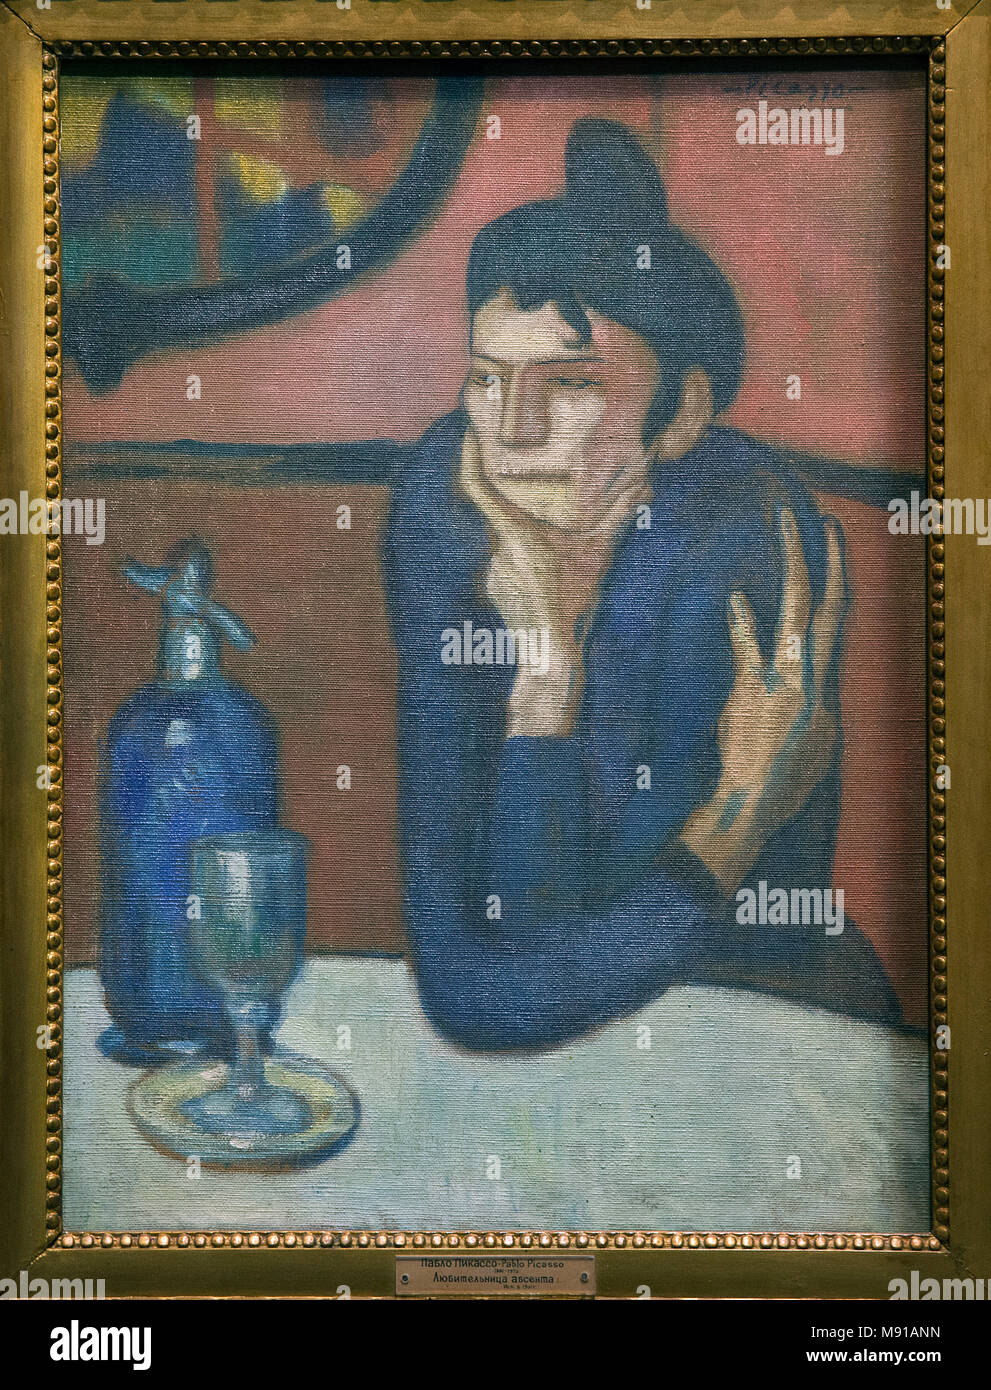 Pablo Picasso, bebedor de absenta, París, 1901, óleo sobre lienzo. Colección Shchukin, Museo Ermitage, San Petersburgo. Los disparos mientras expuesta en París, Franco Foto de stock